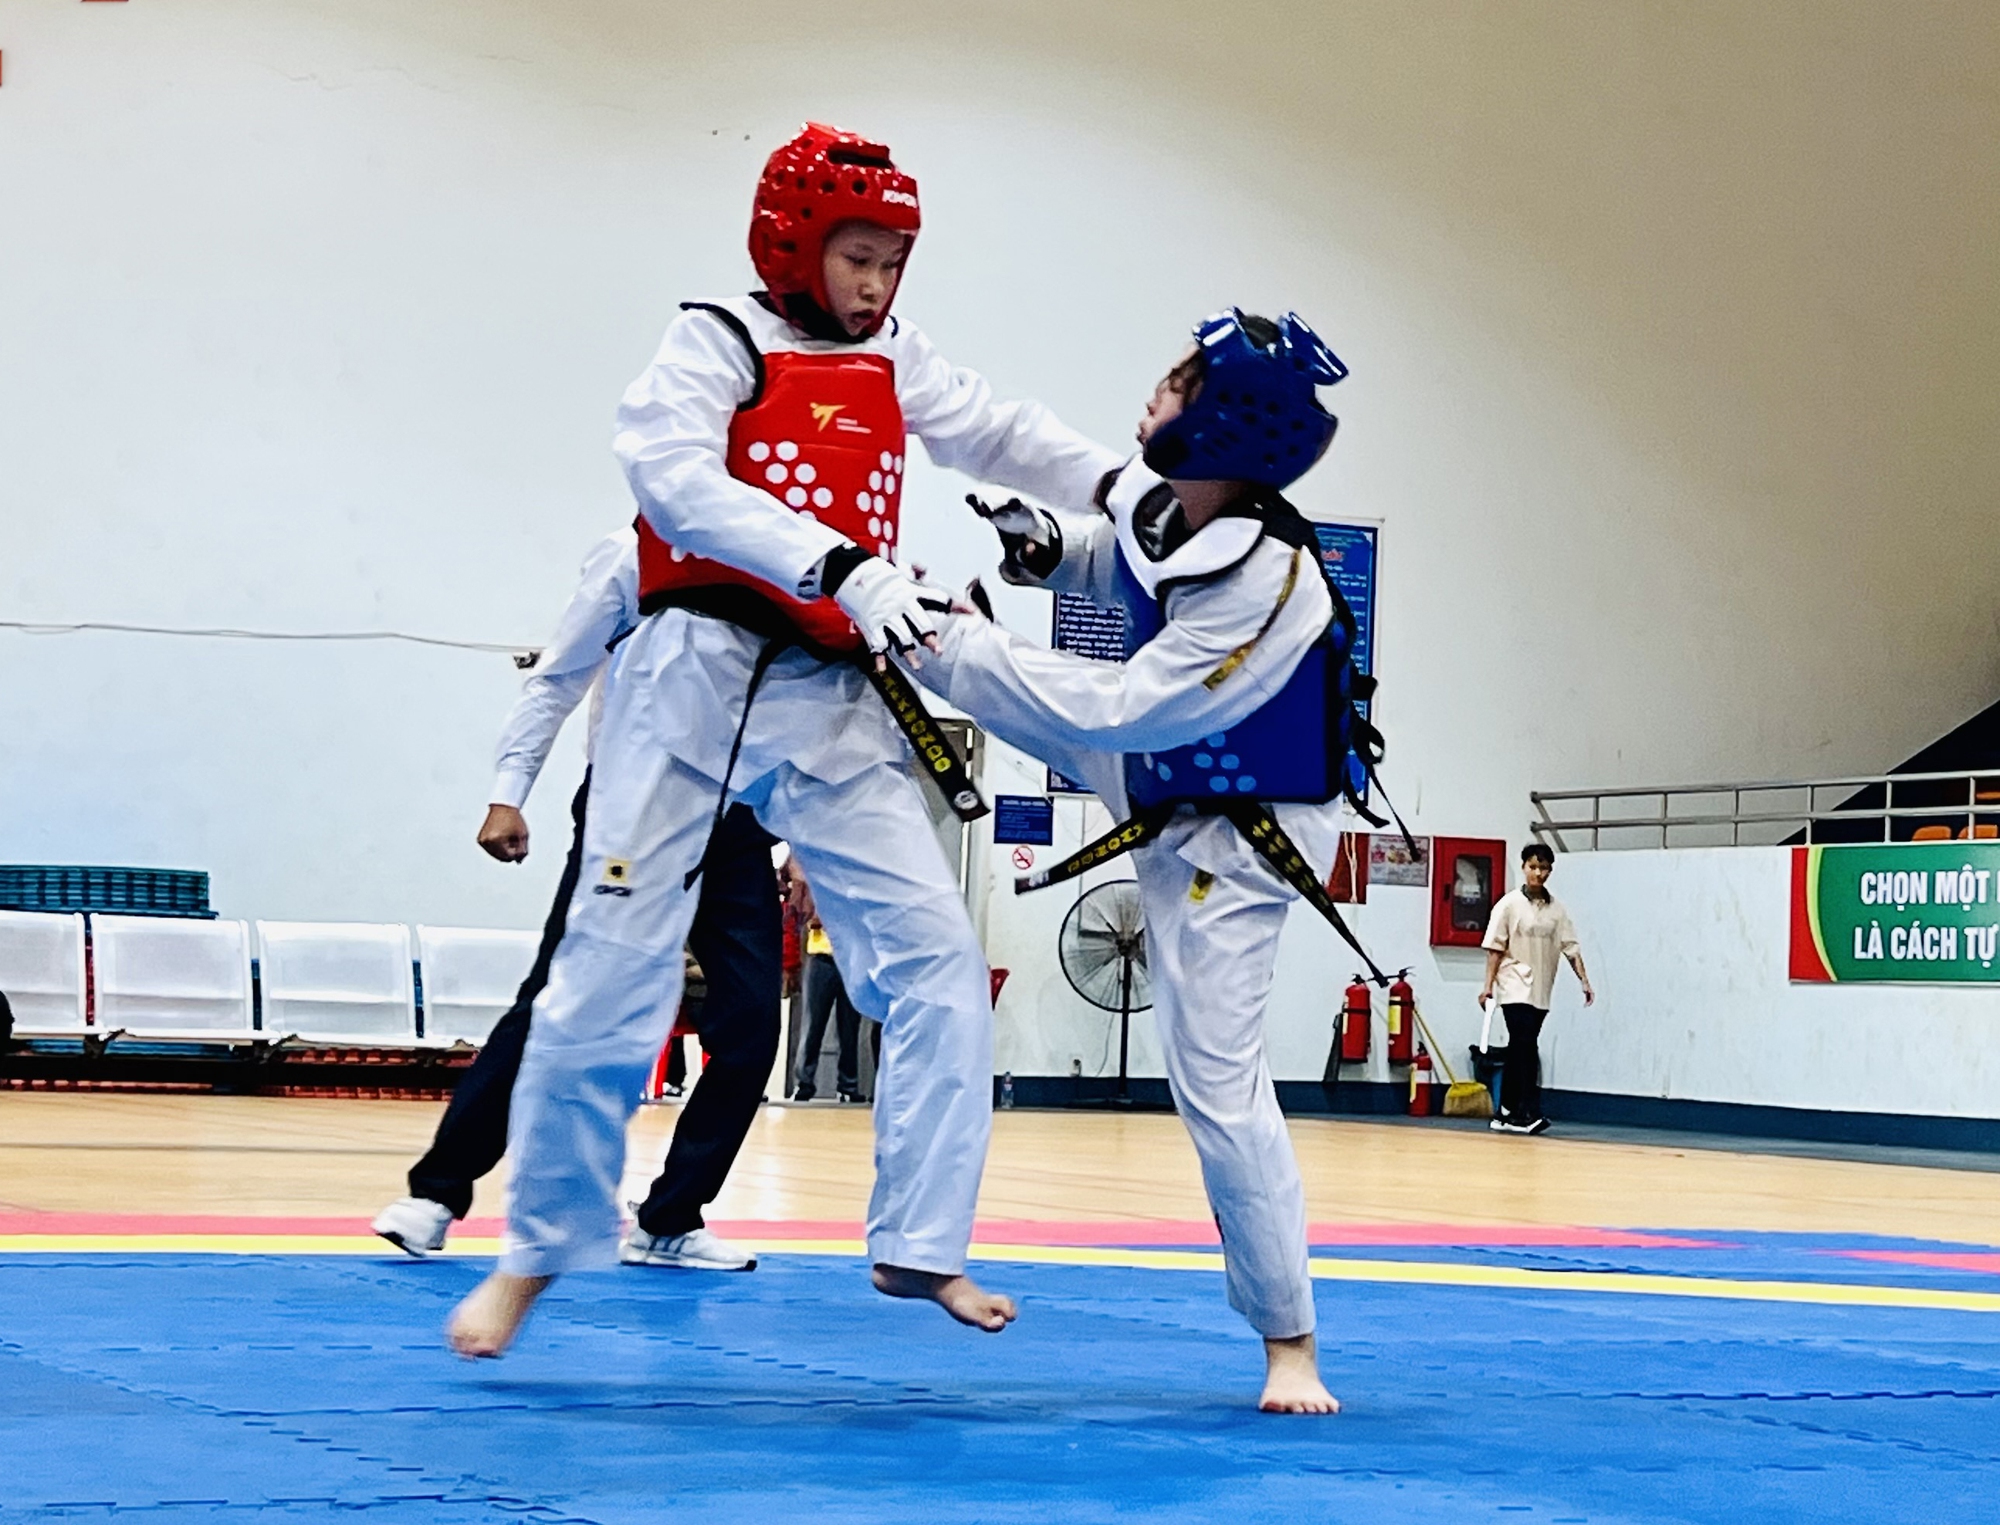 Bà Rịa - Vũng Tàu: Đưa taekwondo thành môn thể thao chủ lực - Ảnh 1.